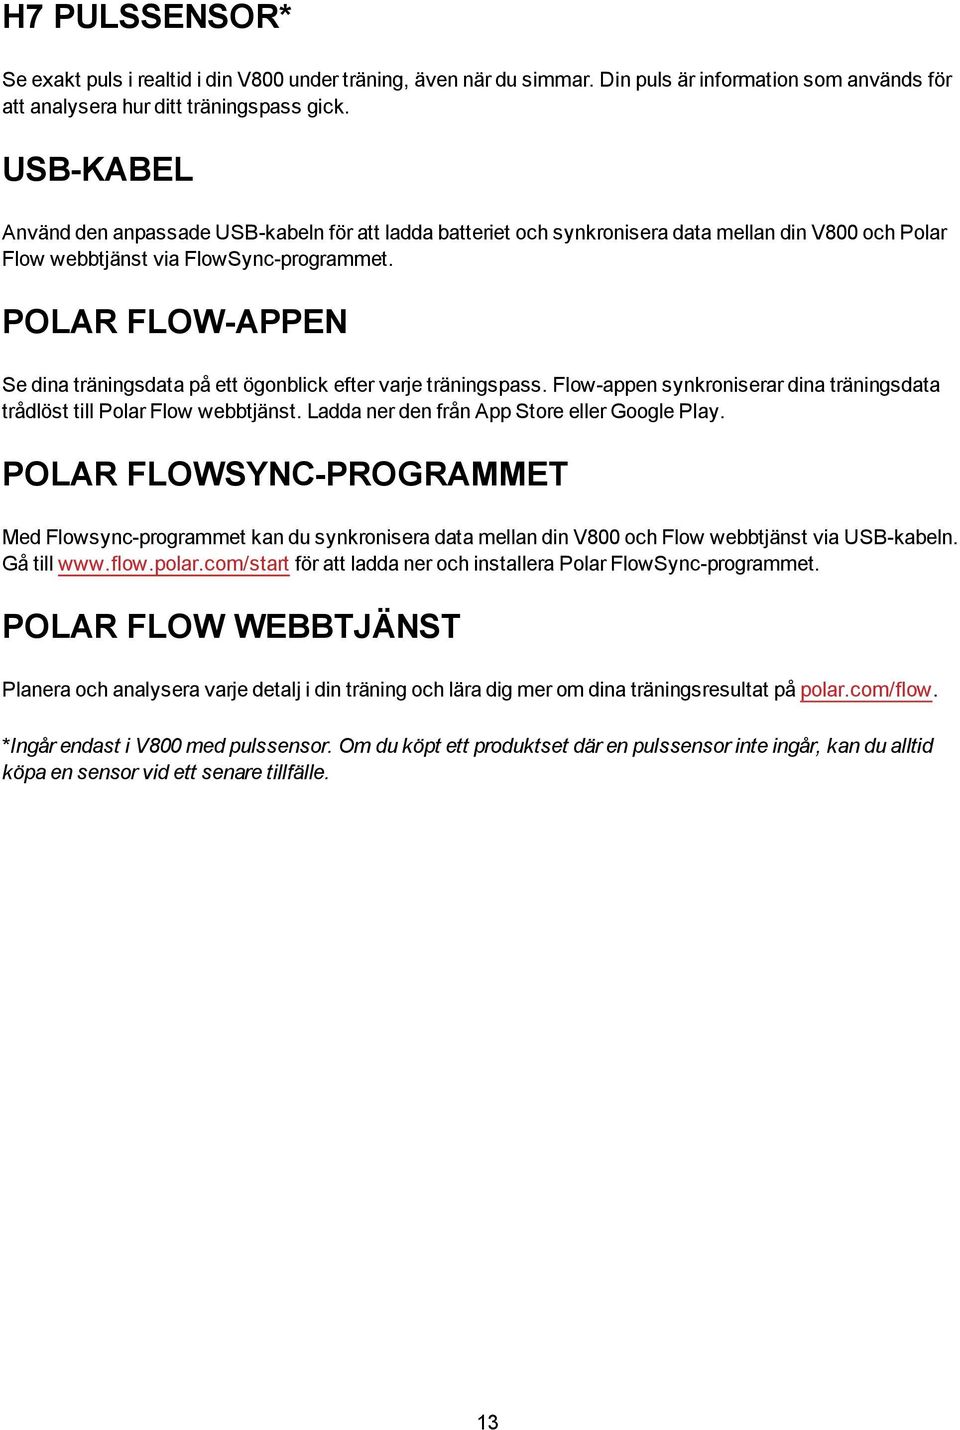 POLAR FLOW-APPEN Se dina träningsdata på ett ögonblick efter varje träningspass. Flow-appen synkroniserar dina träningsdata trådlöst till Polar Flow webbtjänst.